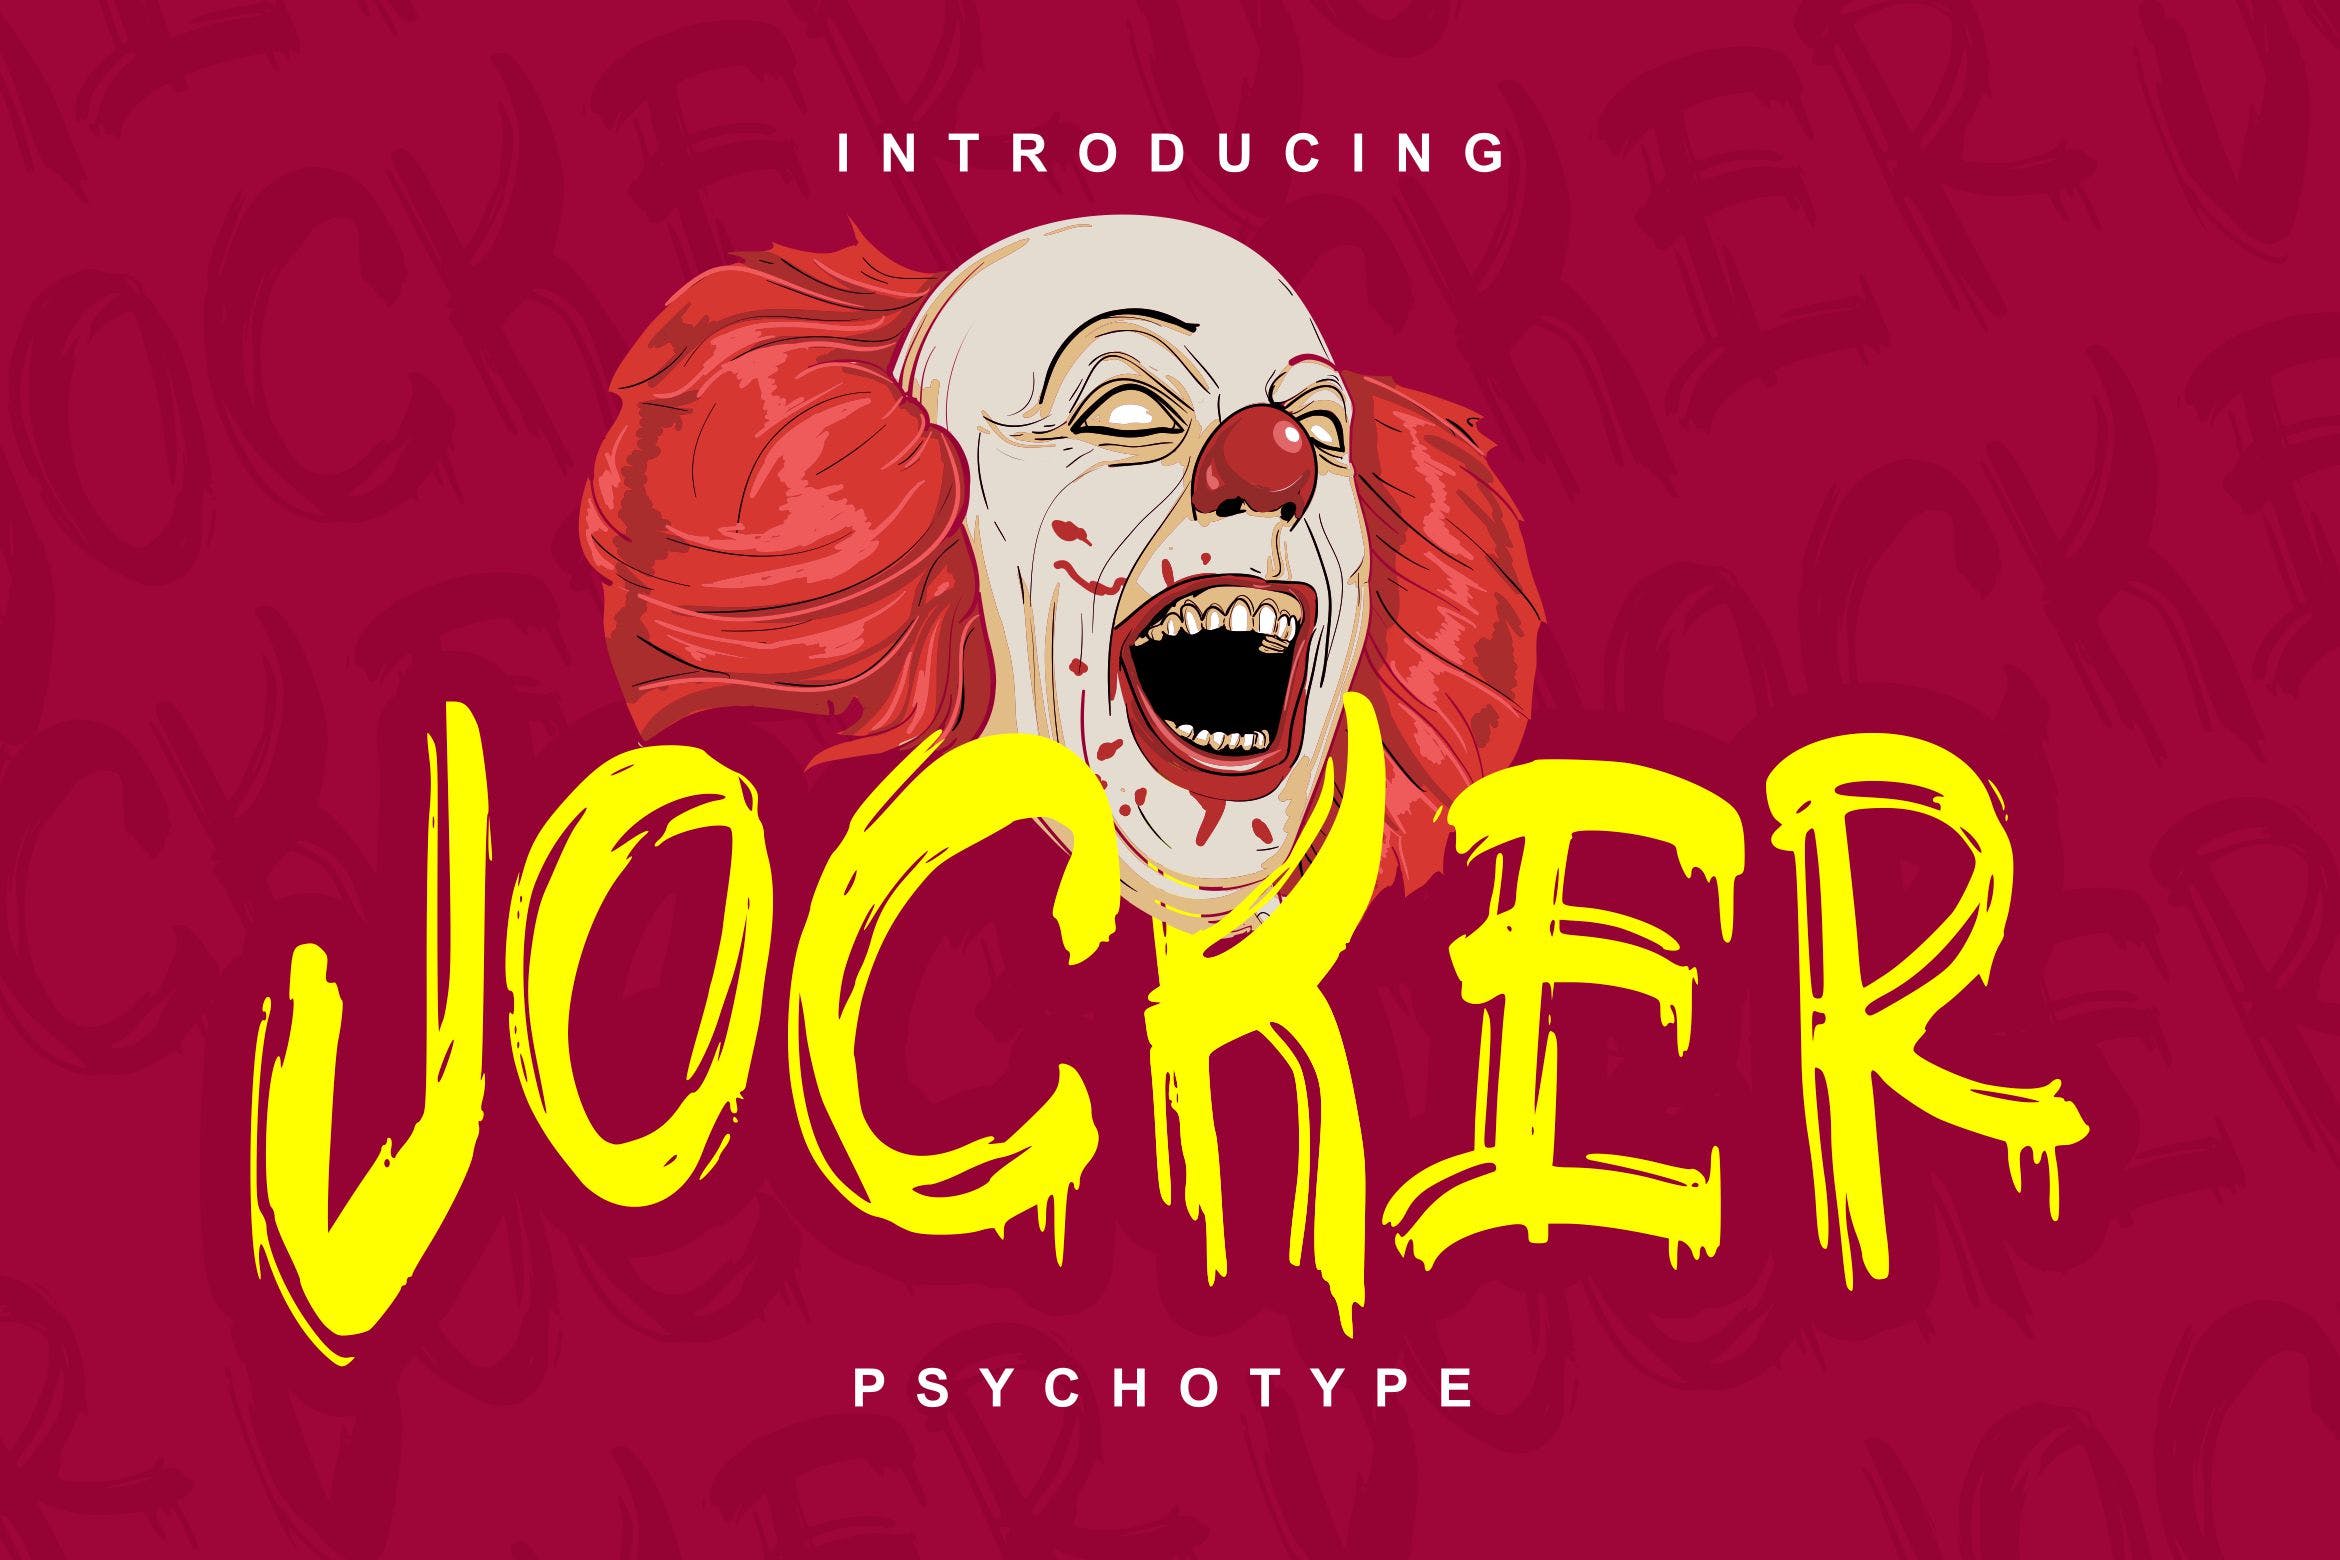 极具个性的英文笔刷装饰字体素材天下精选 Jocker | Psychotype Font Theme插图